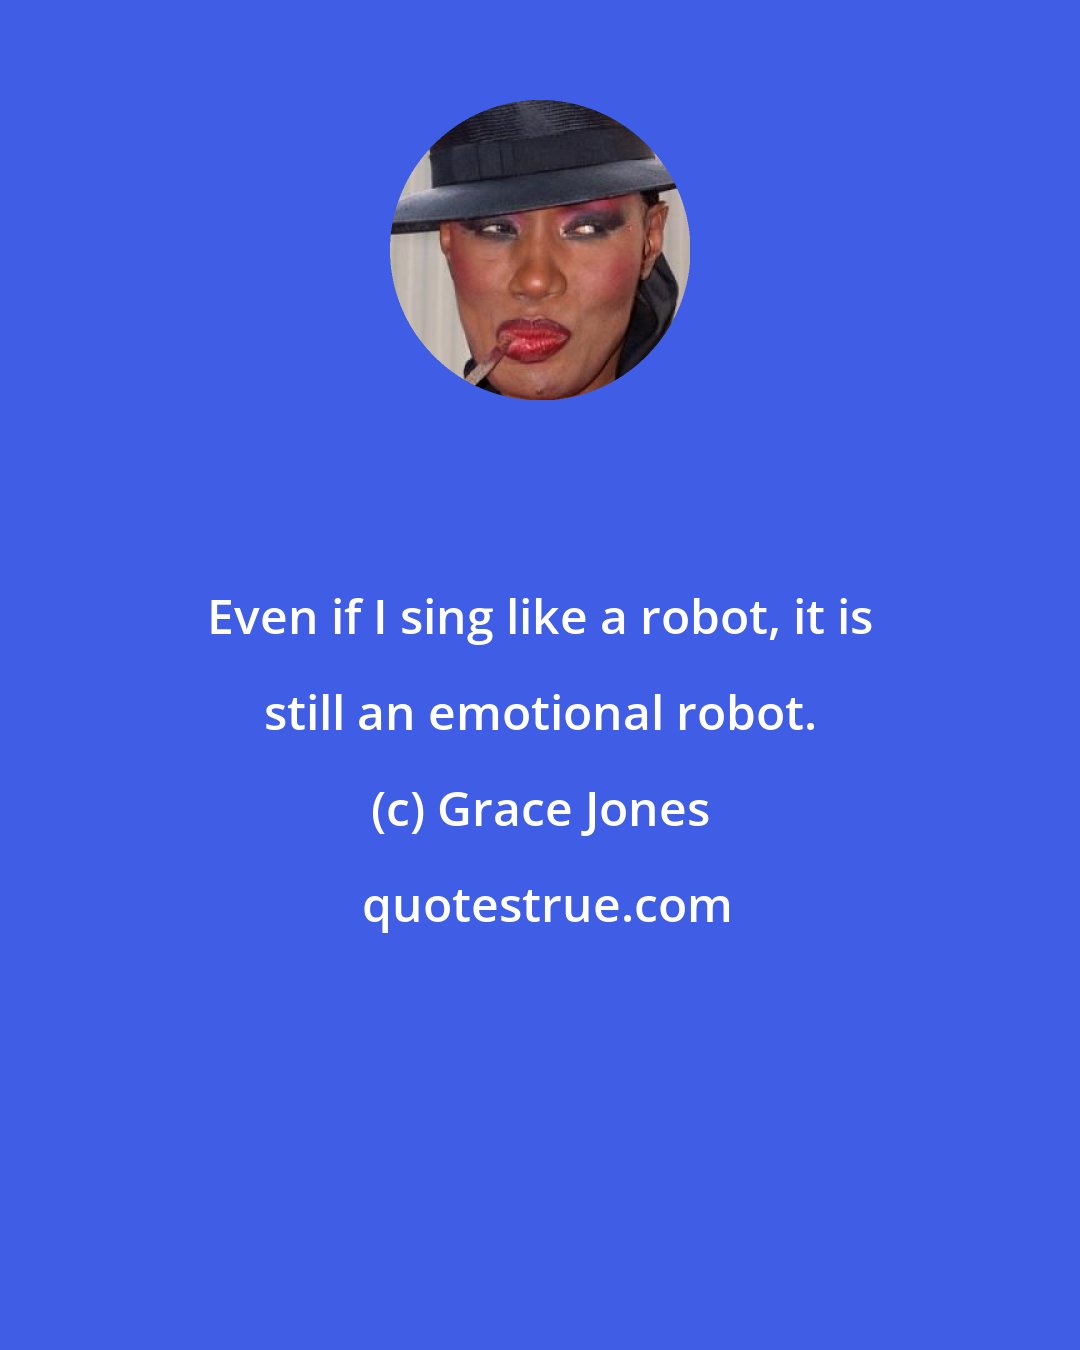 Grace Jones: Even if I sing like a robot, it is still an emotional robot.